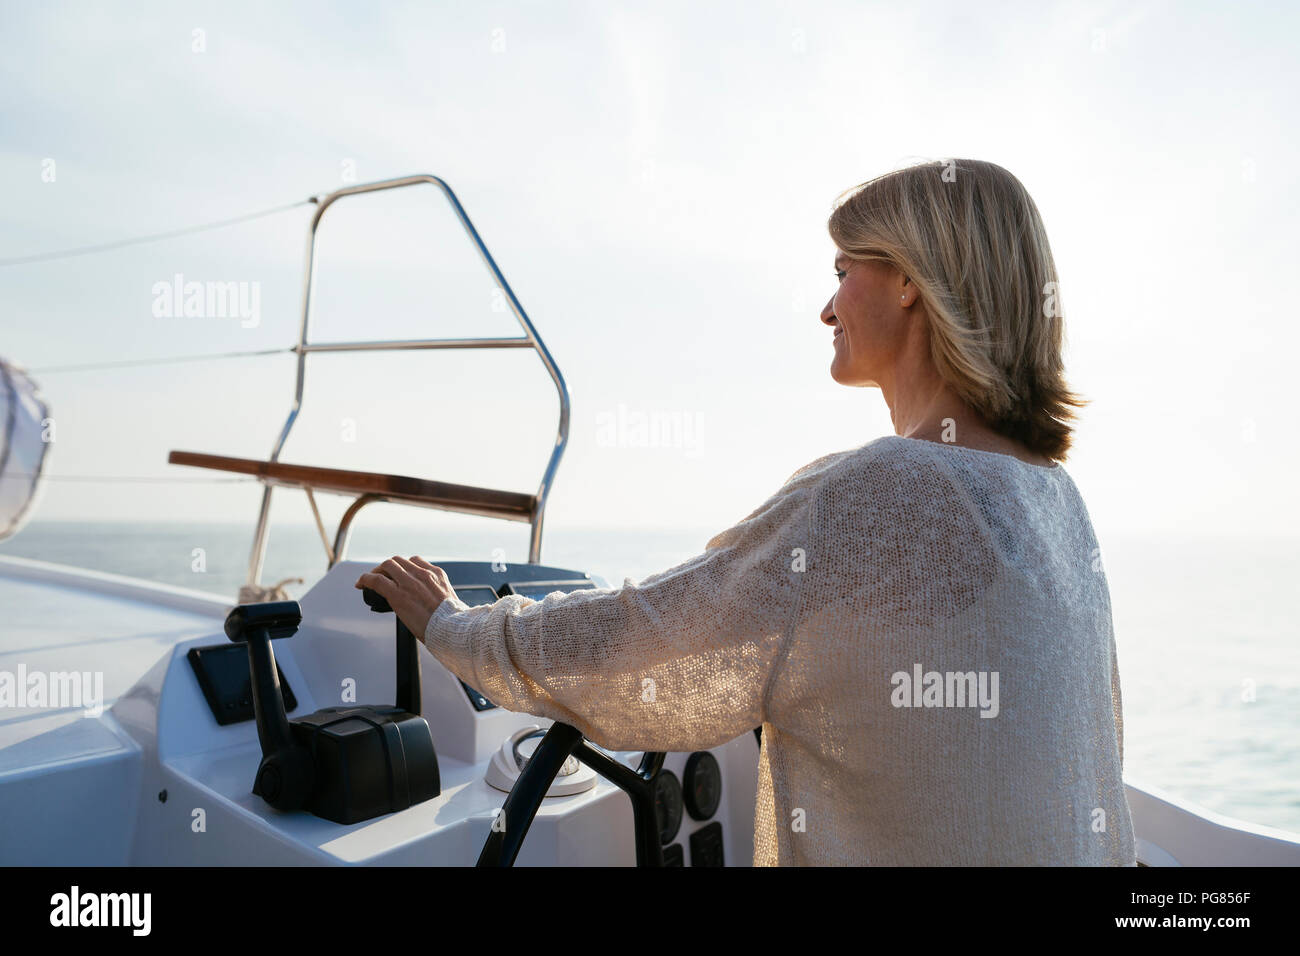 Mature woman navigating catamaran on a sailing trip Stock Photo